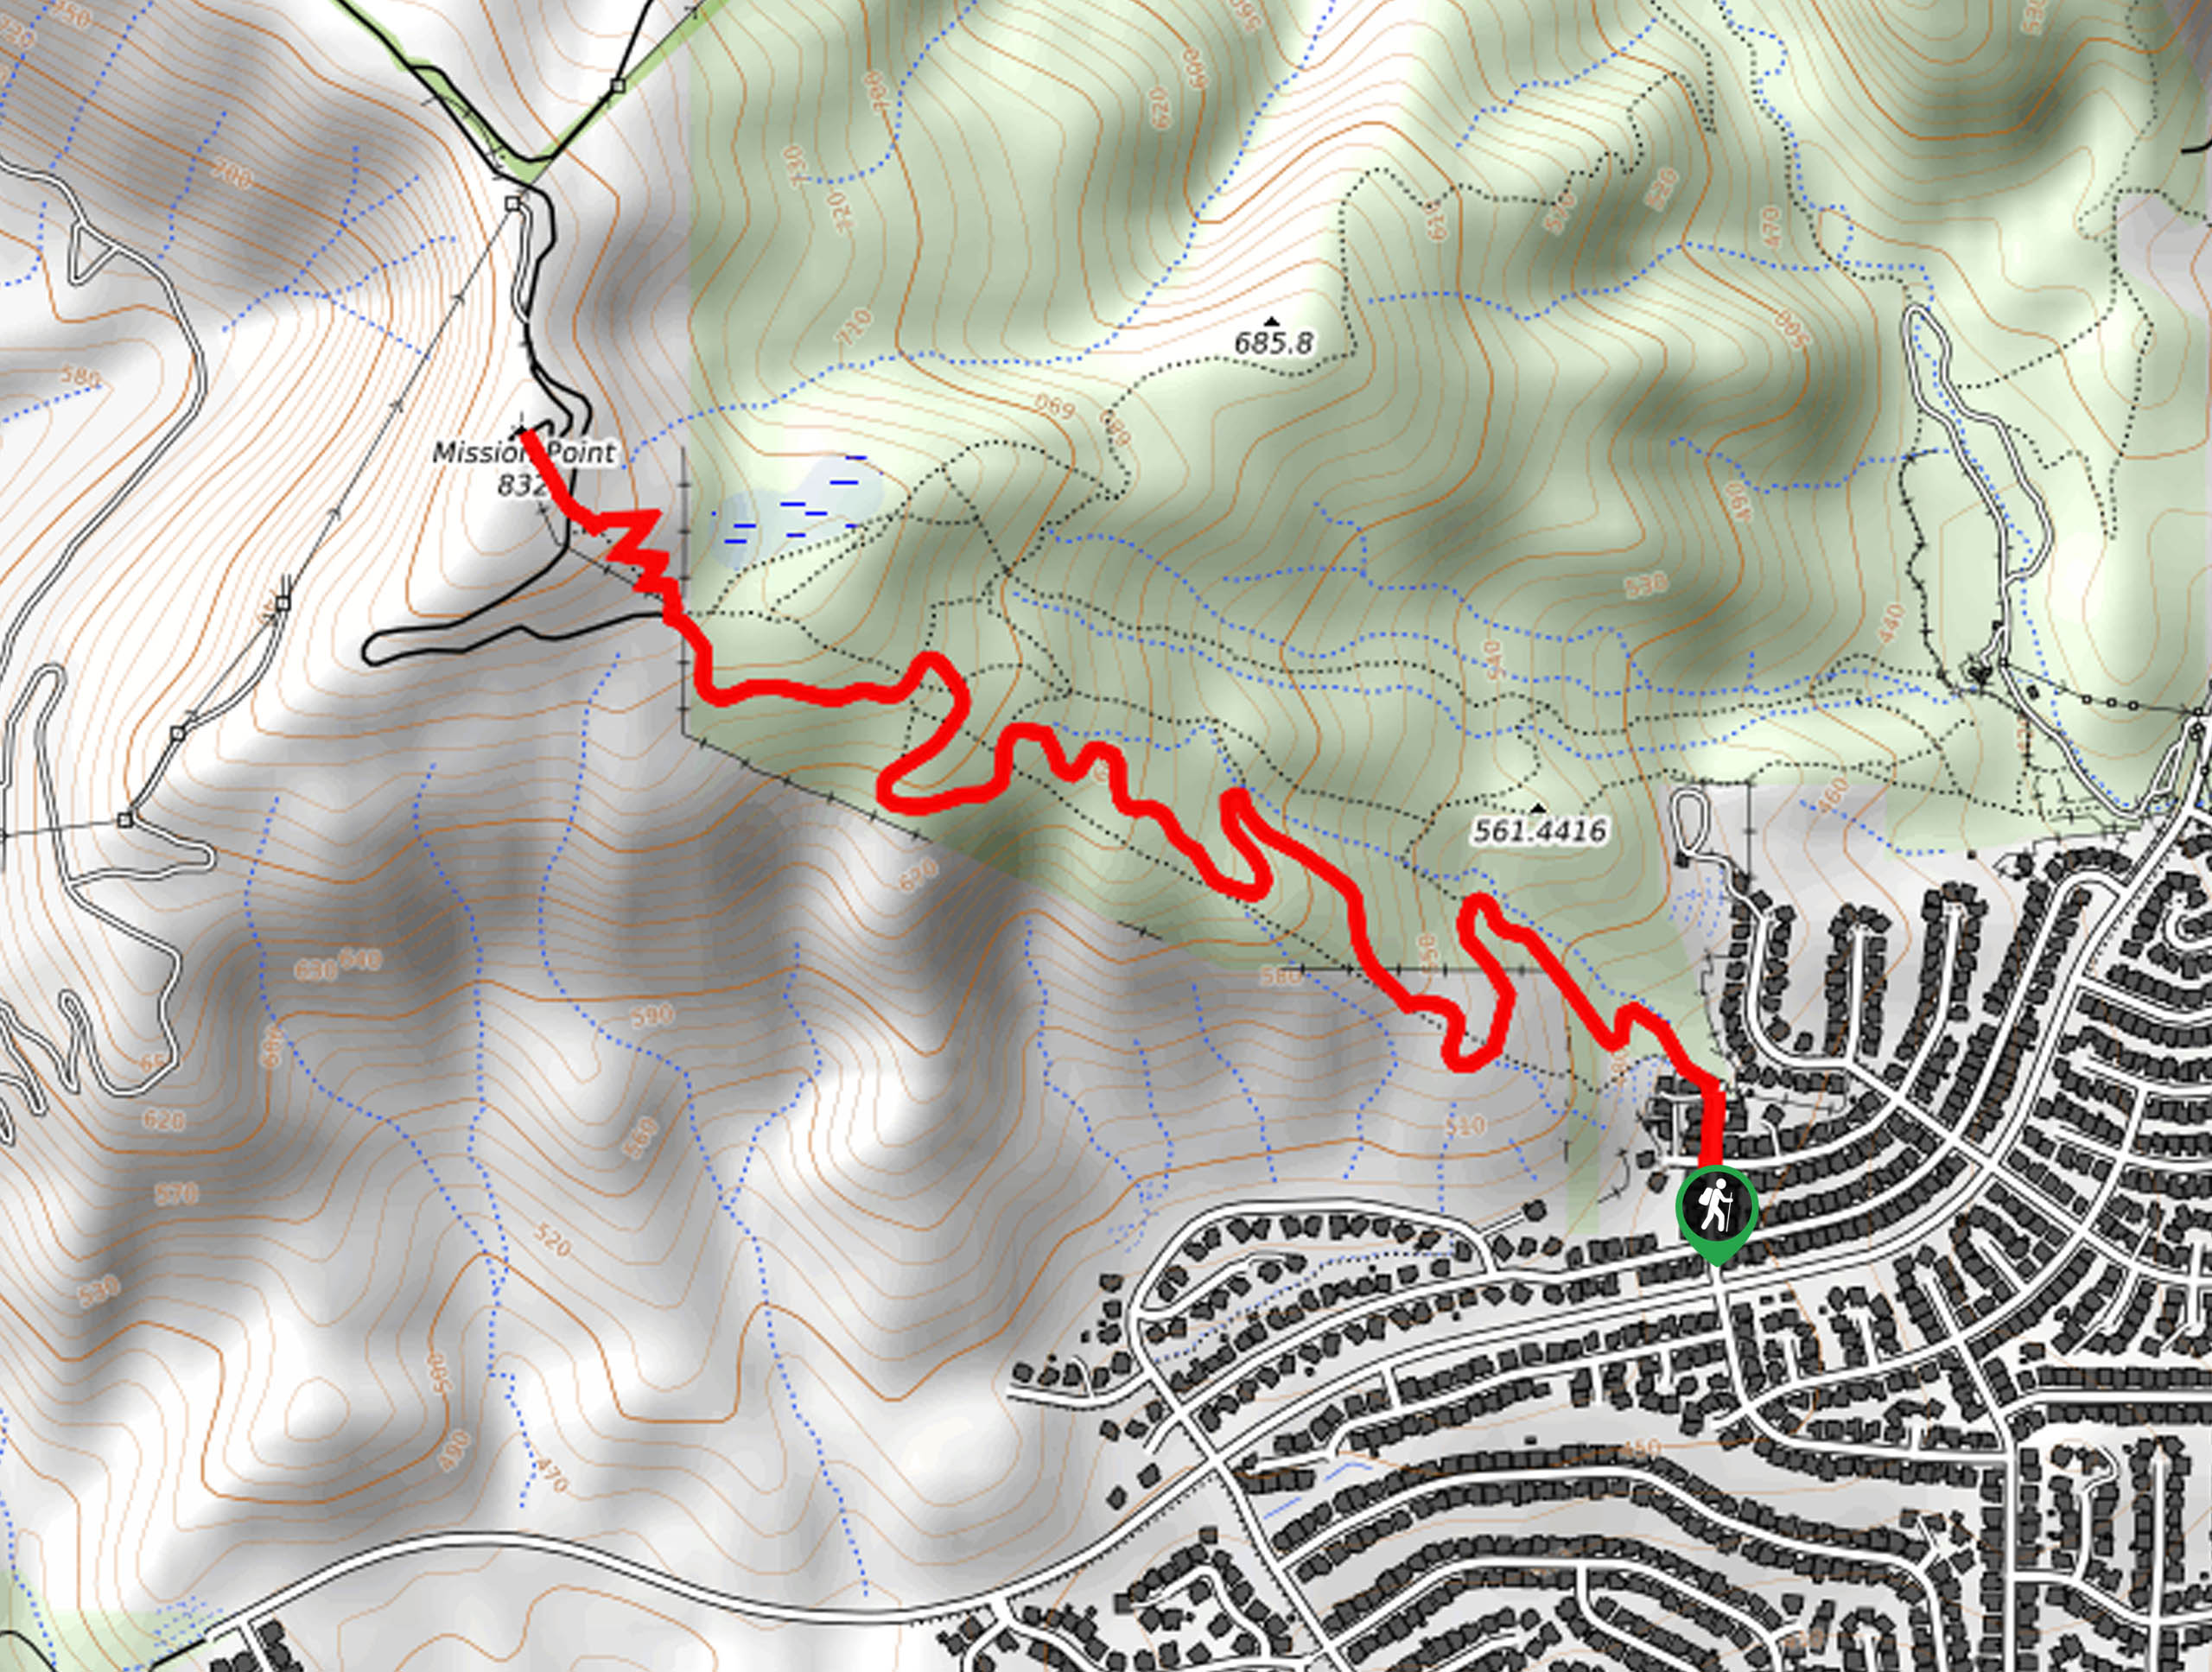 Mission Point via De Campos Trail Map